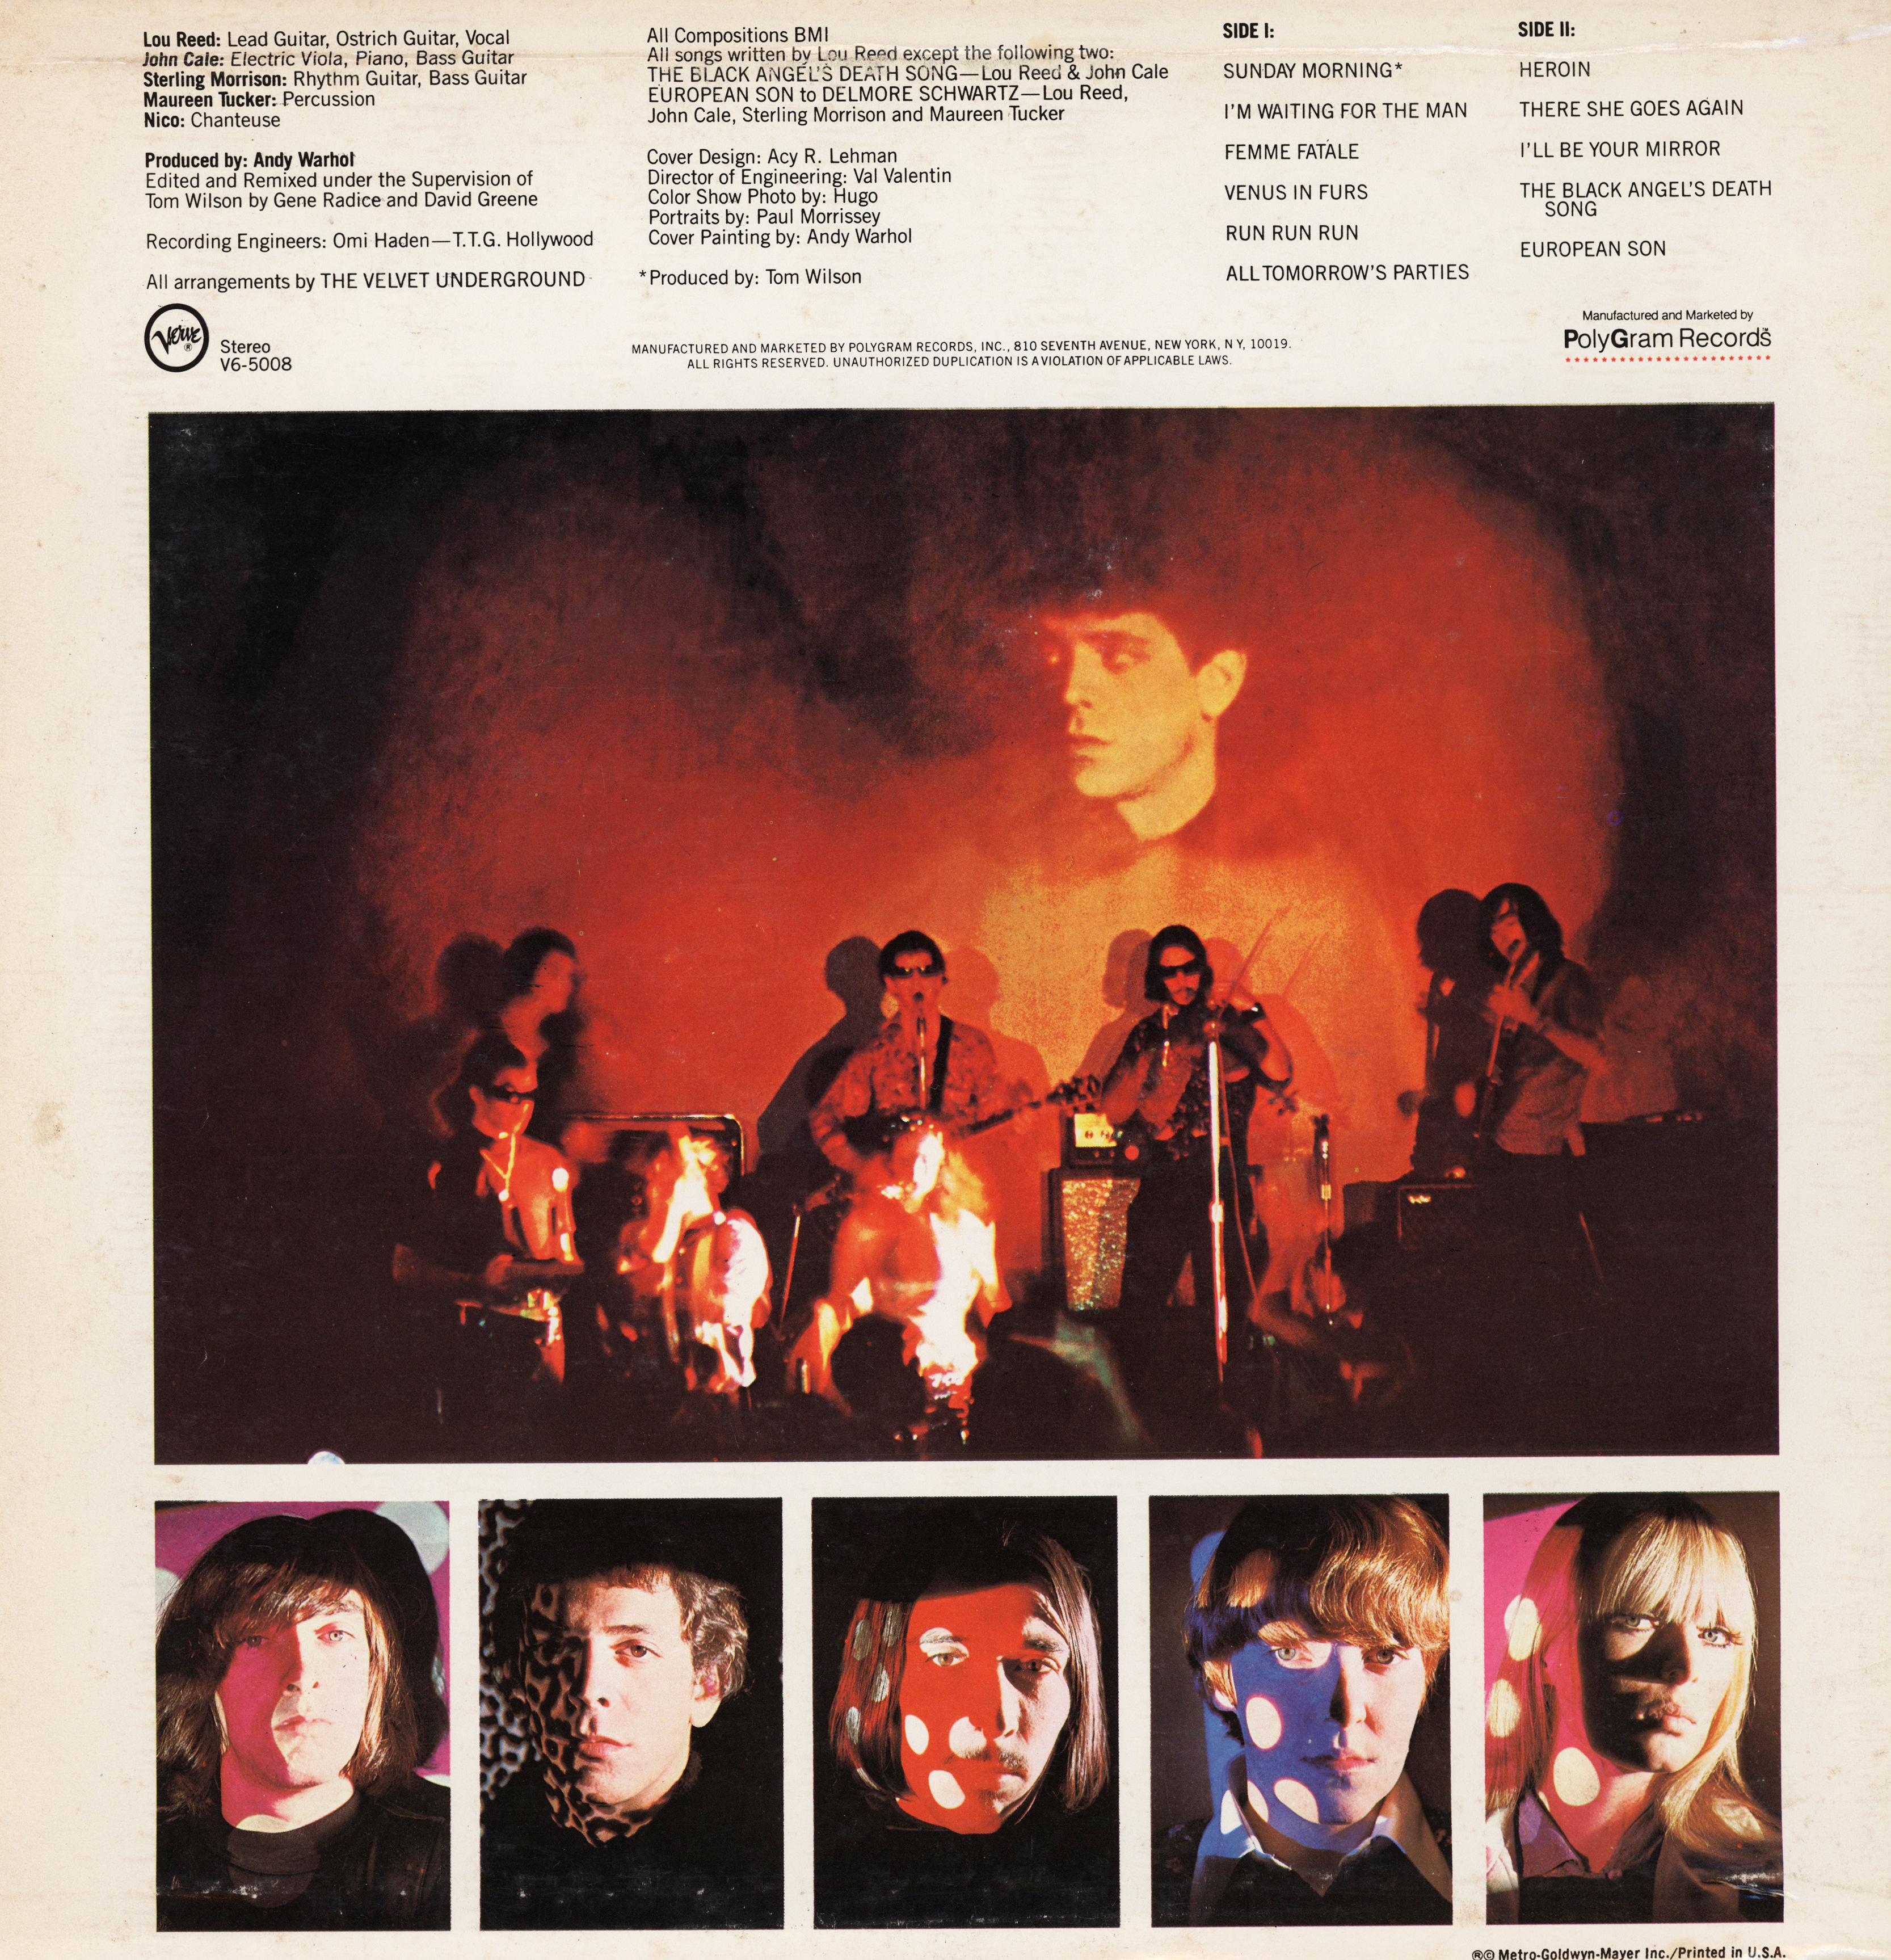 The Velvet Underground & Nico, Selbstbetitelt, LP, 1985 (Pop-Art), Art, von Andy Warhol